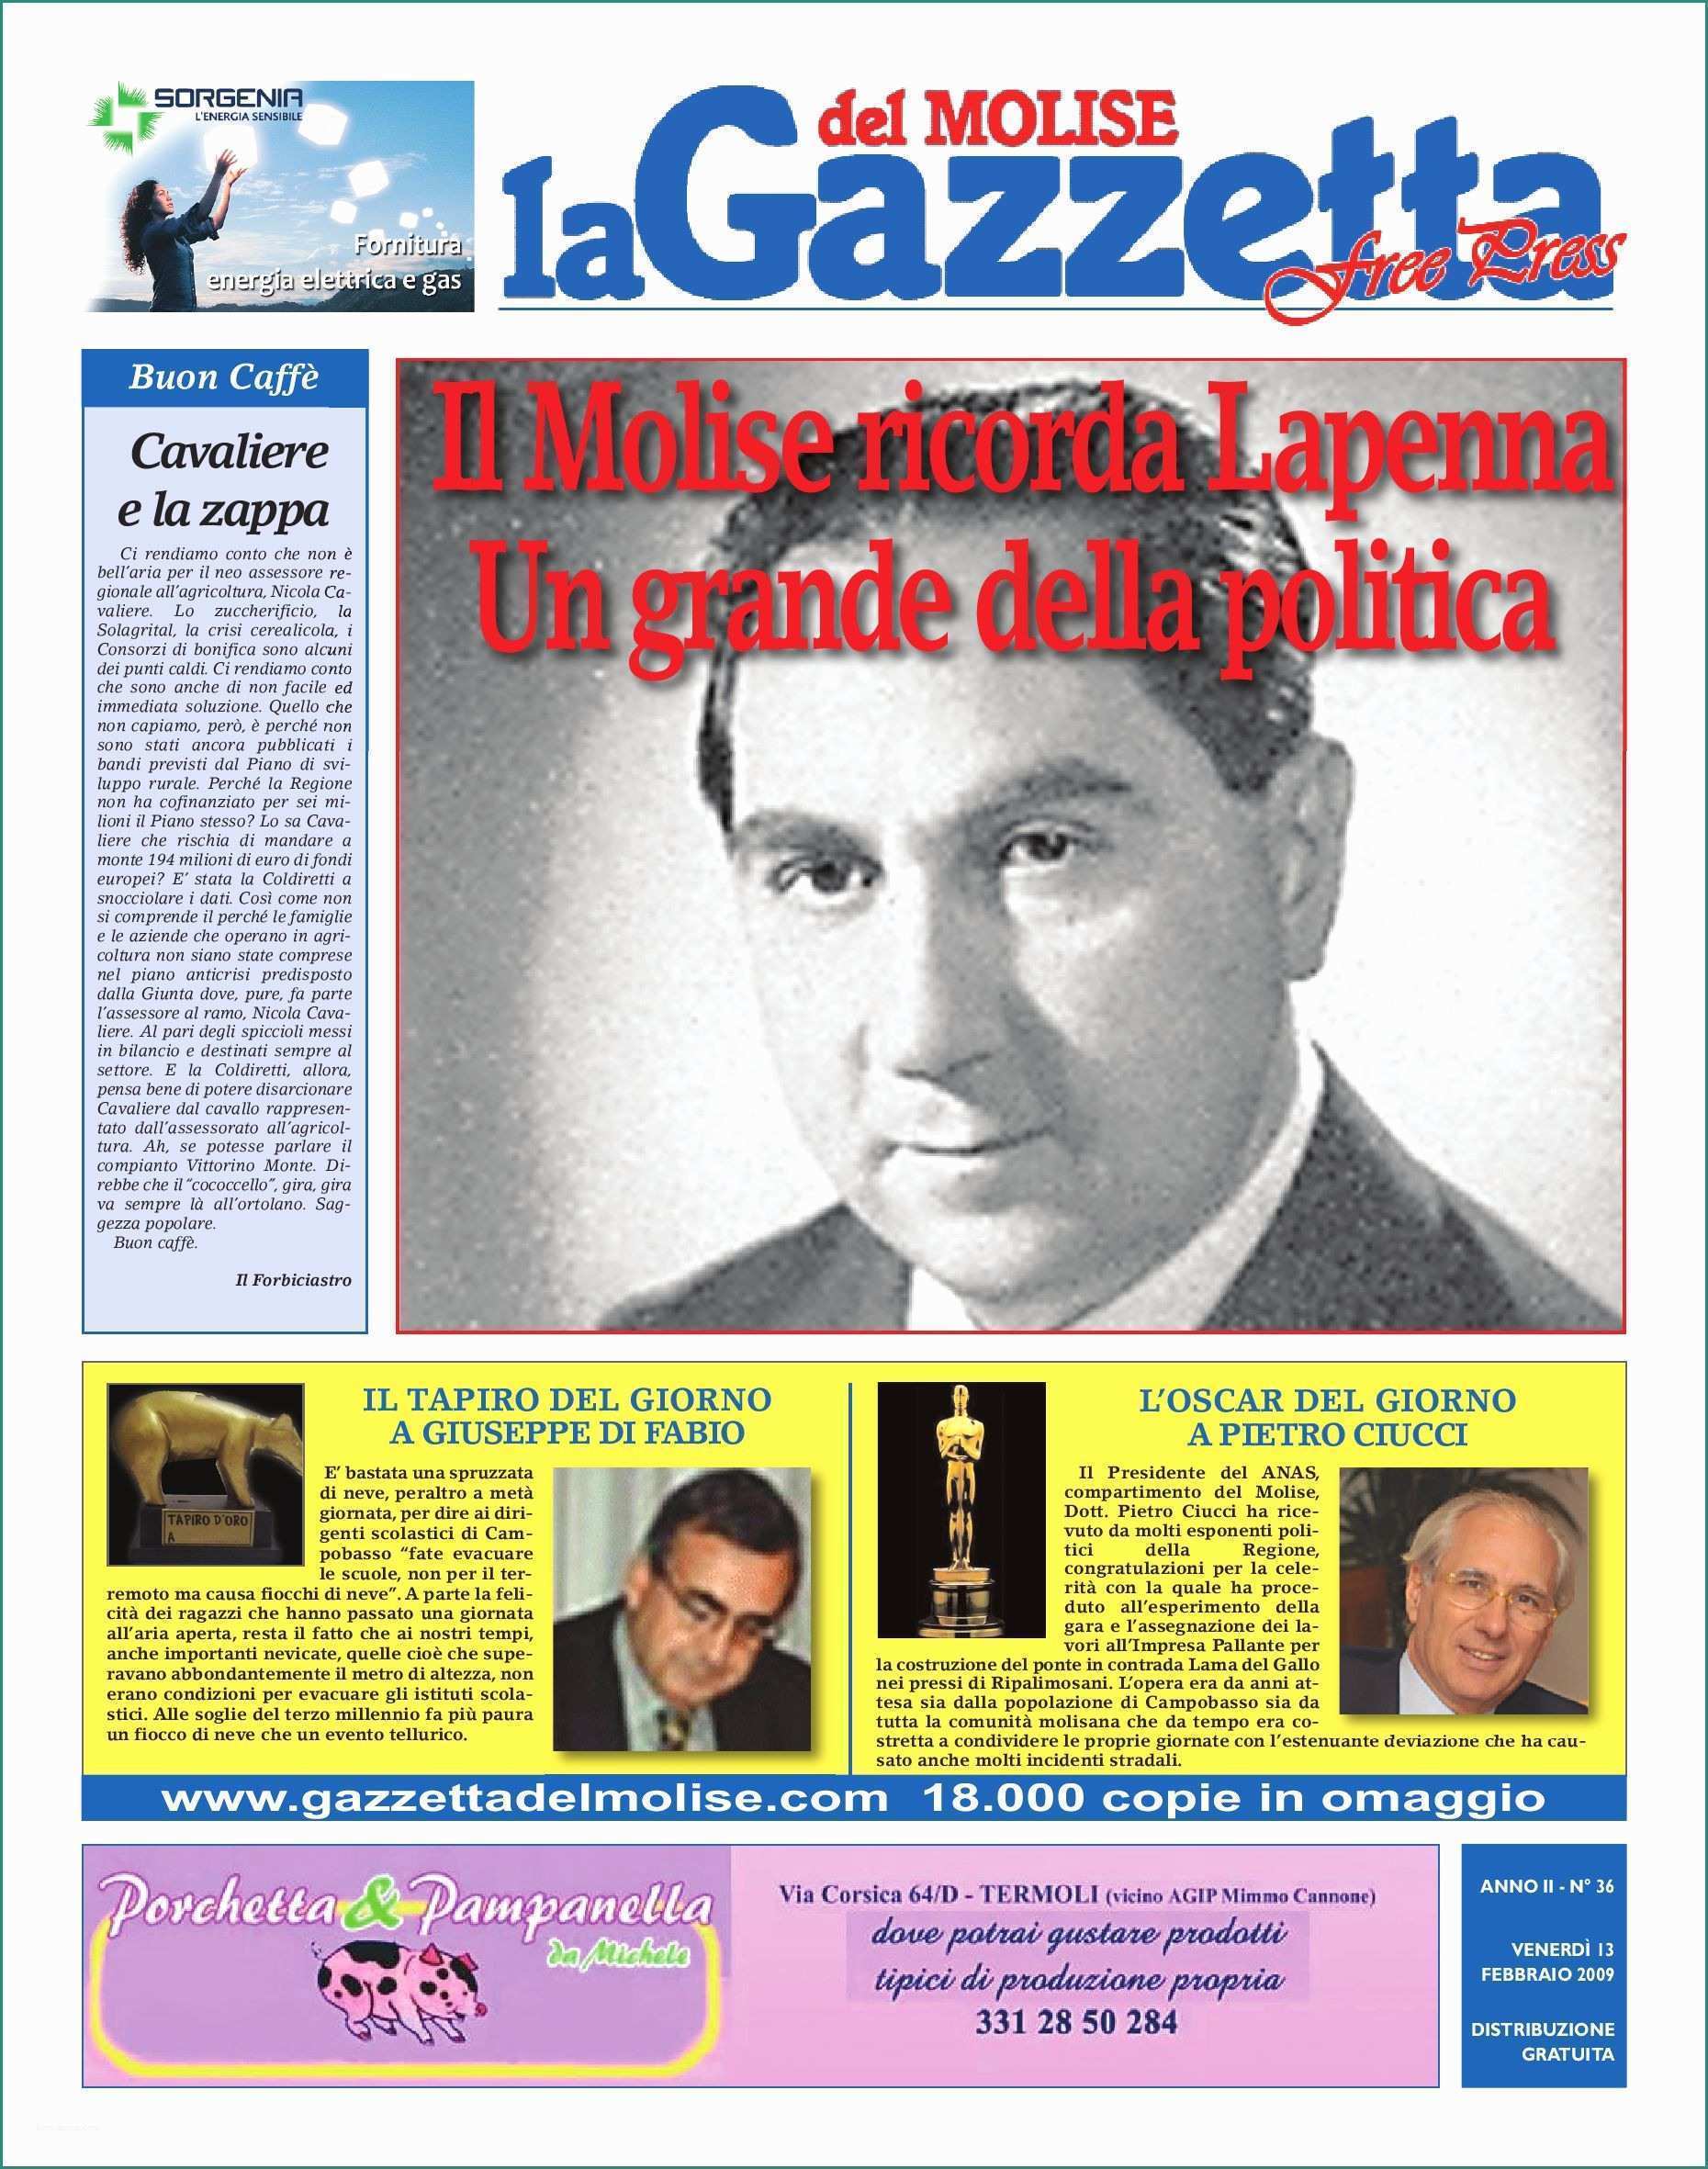 Interpretazione Dei sogni Cabala E La Gazzetta Del Molise Free Press 13 02 2009 by Gazzetta Del